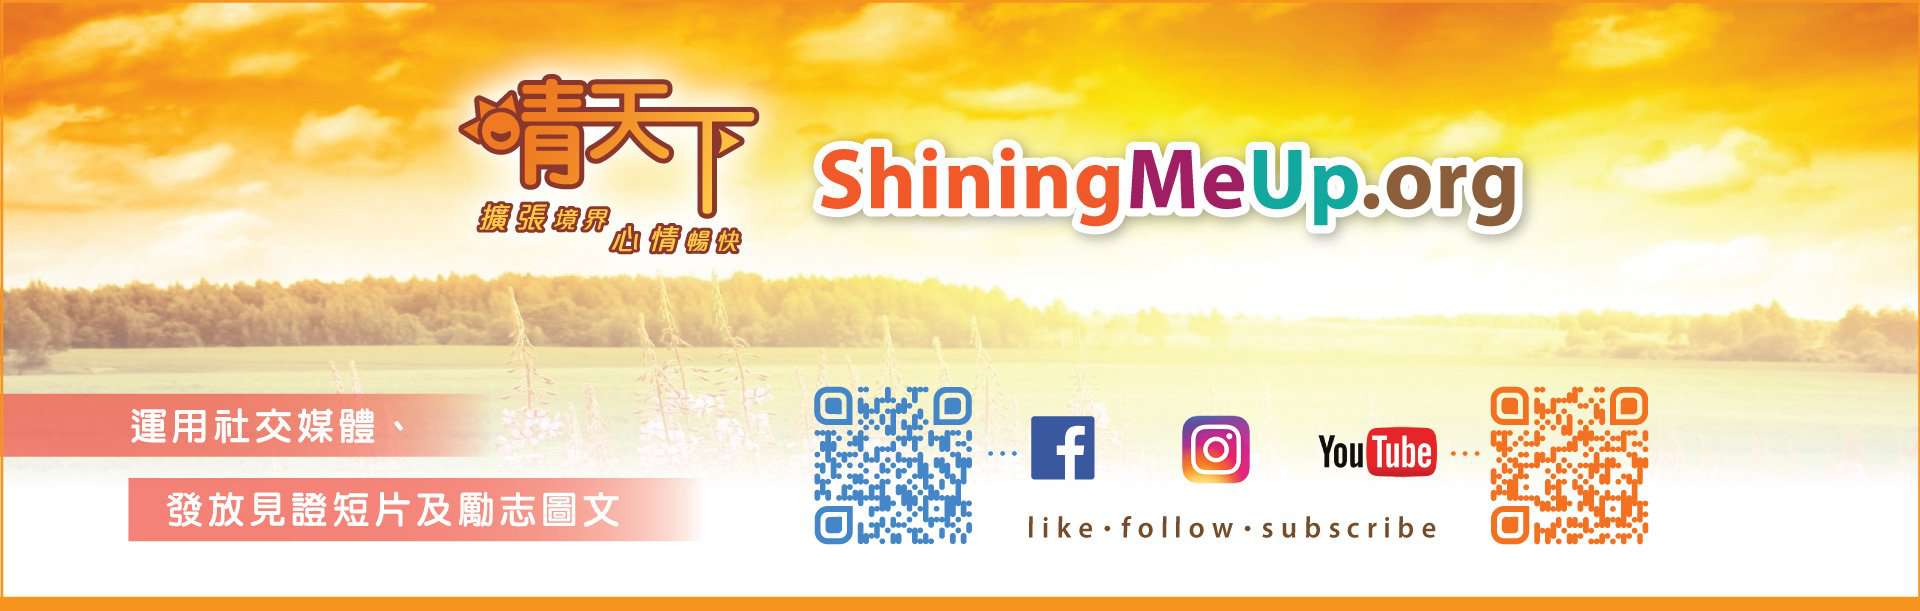 晴天下 ShiningMeUp.org - 扩张境界 心情畅快 - 运用社交媒体、发放见证短片及励志图文